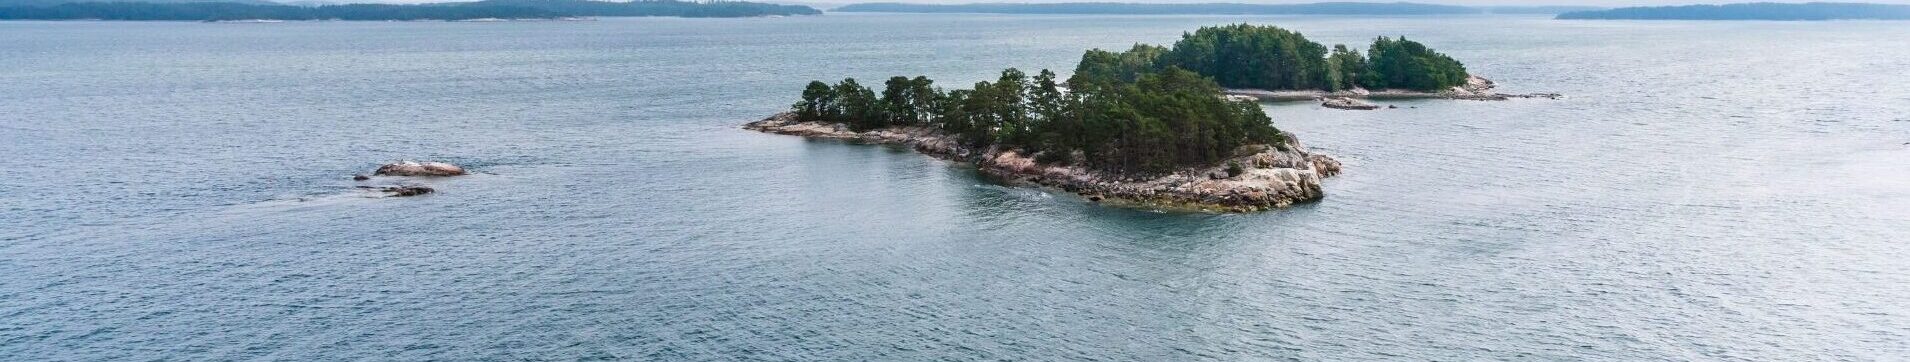 Soome saarestik